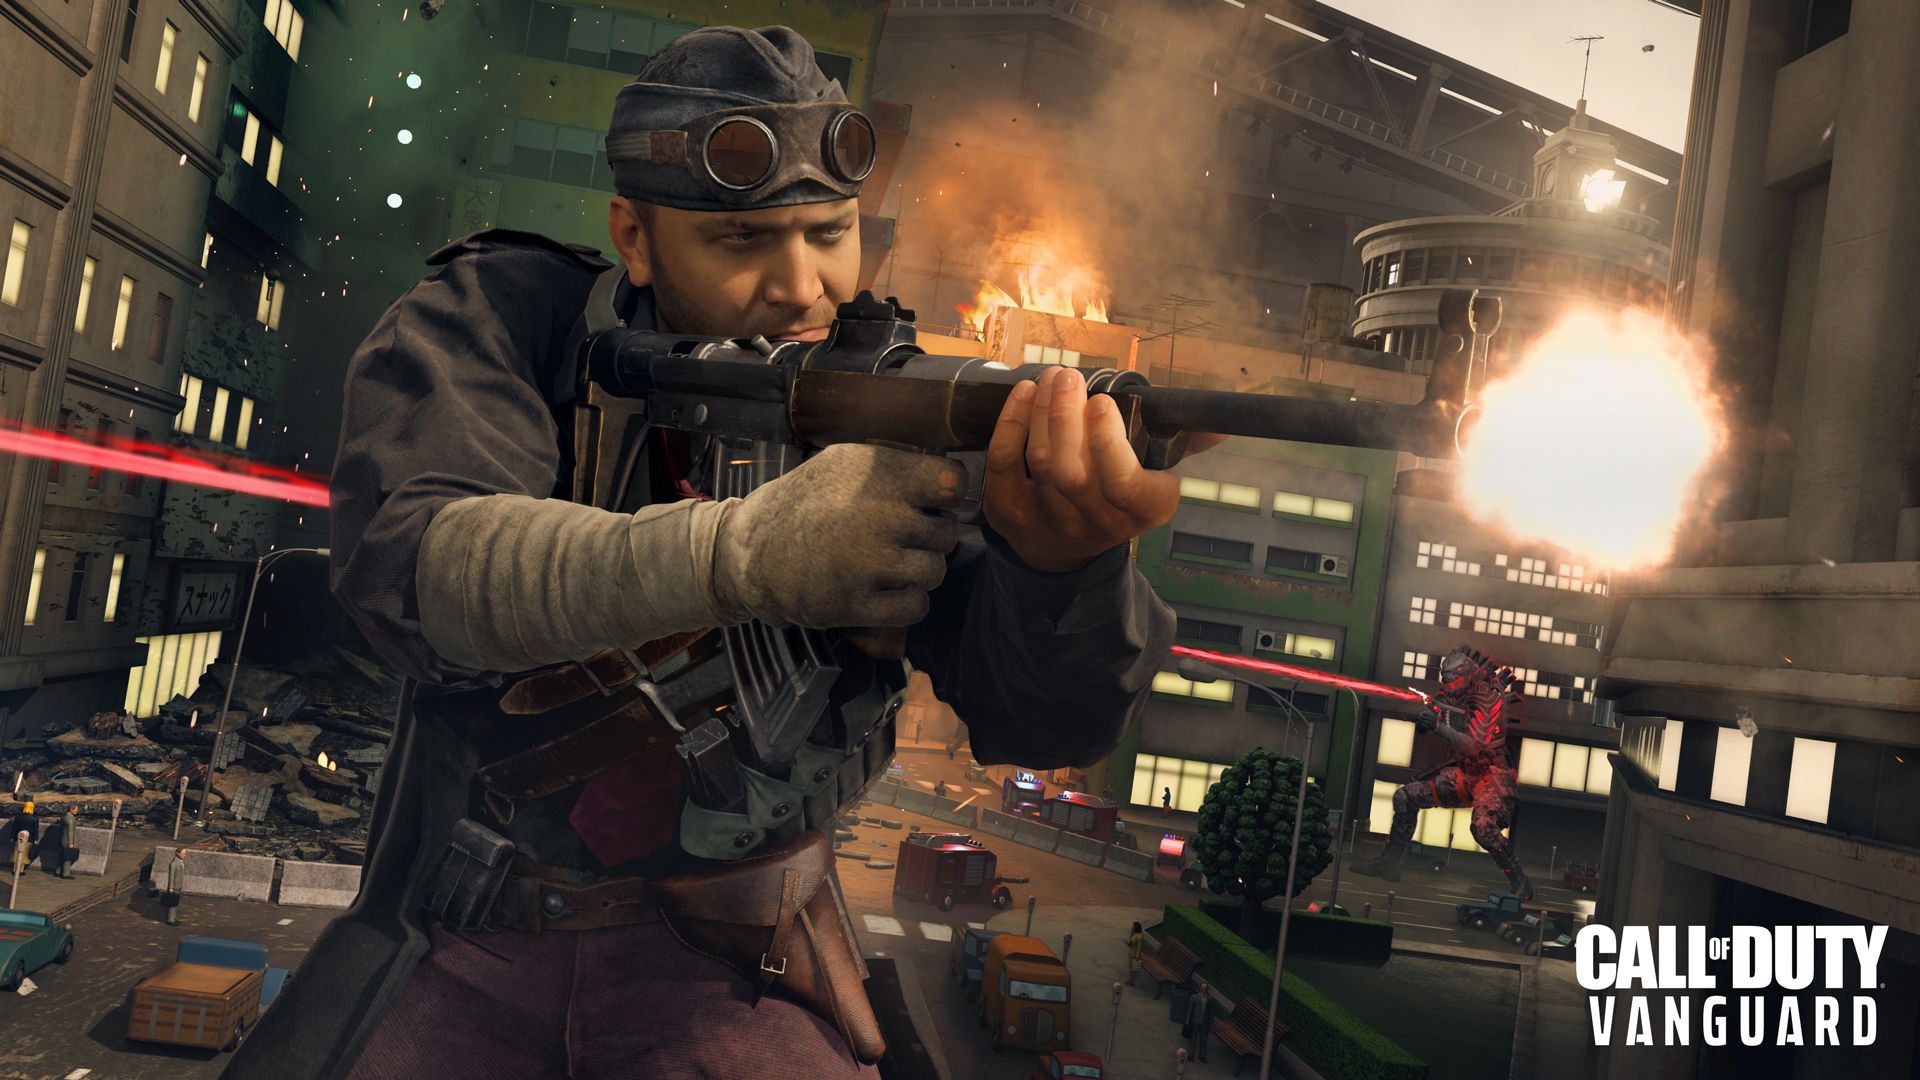 Conheça quatro operadores em Call of Duty: Vanguard Multiplayer